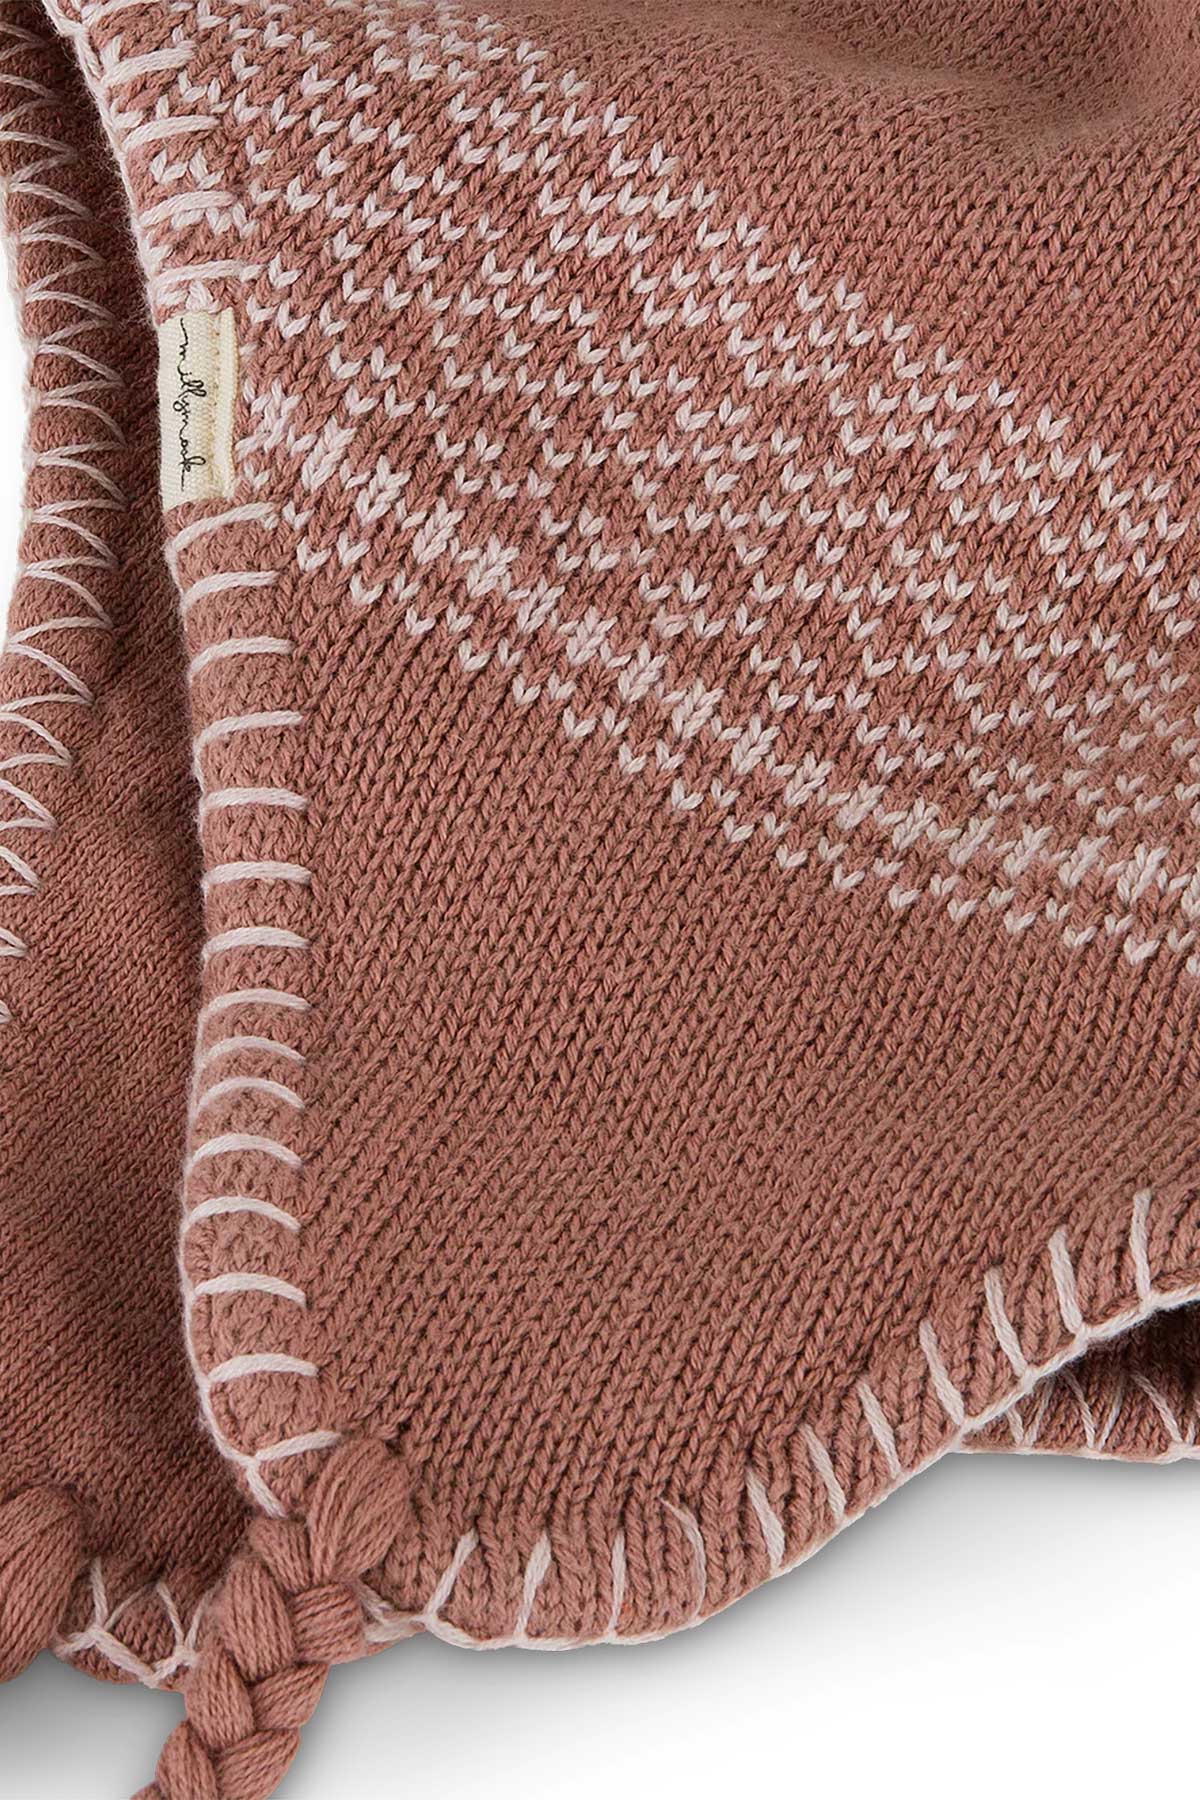 Baby girls Peru - Innes, white stitch detailing